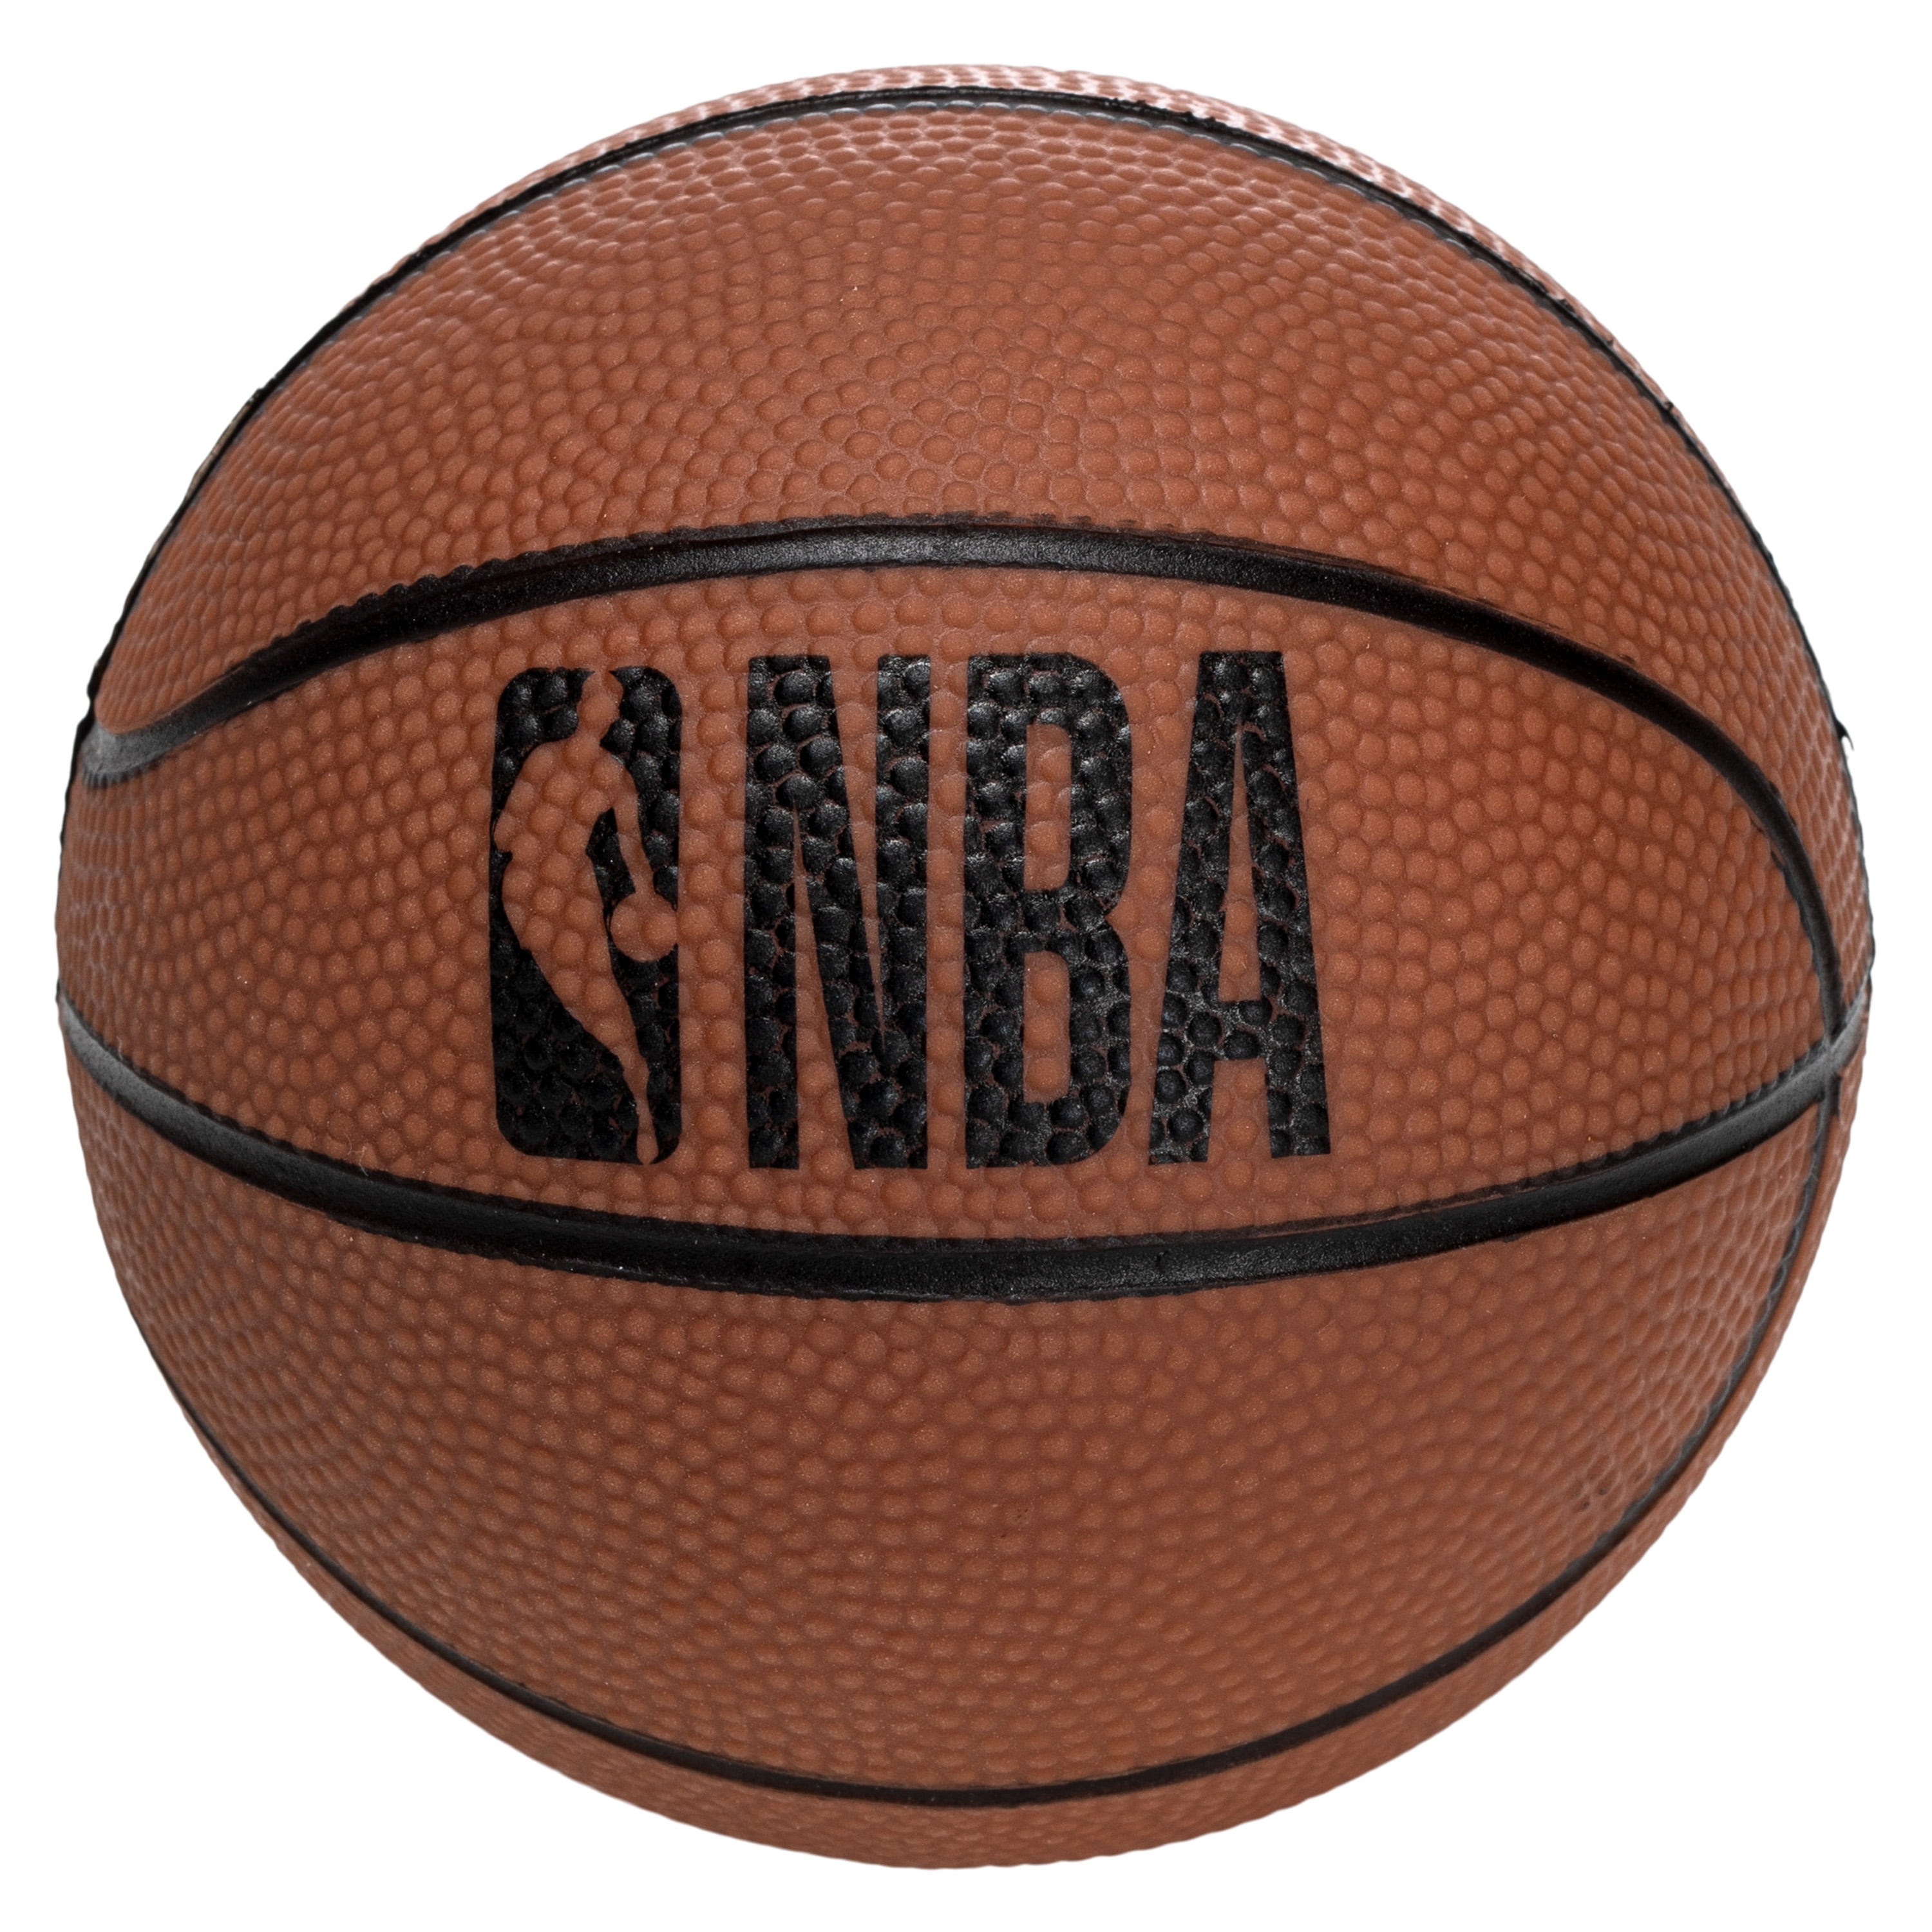 Mini canasta de baloncesto de la NBA de los Indiana Pacers